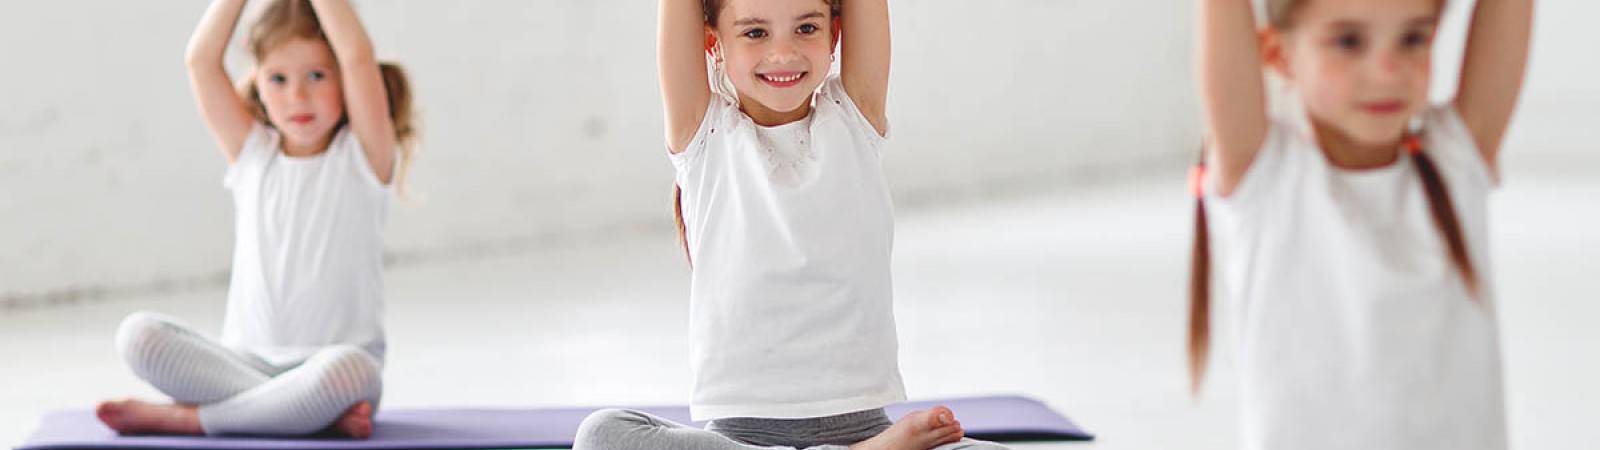 Corso Online Certificato di Yoga per bambini